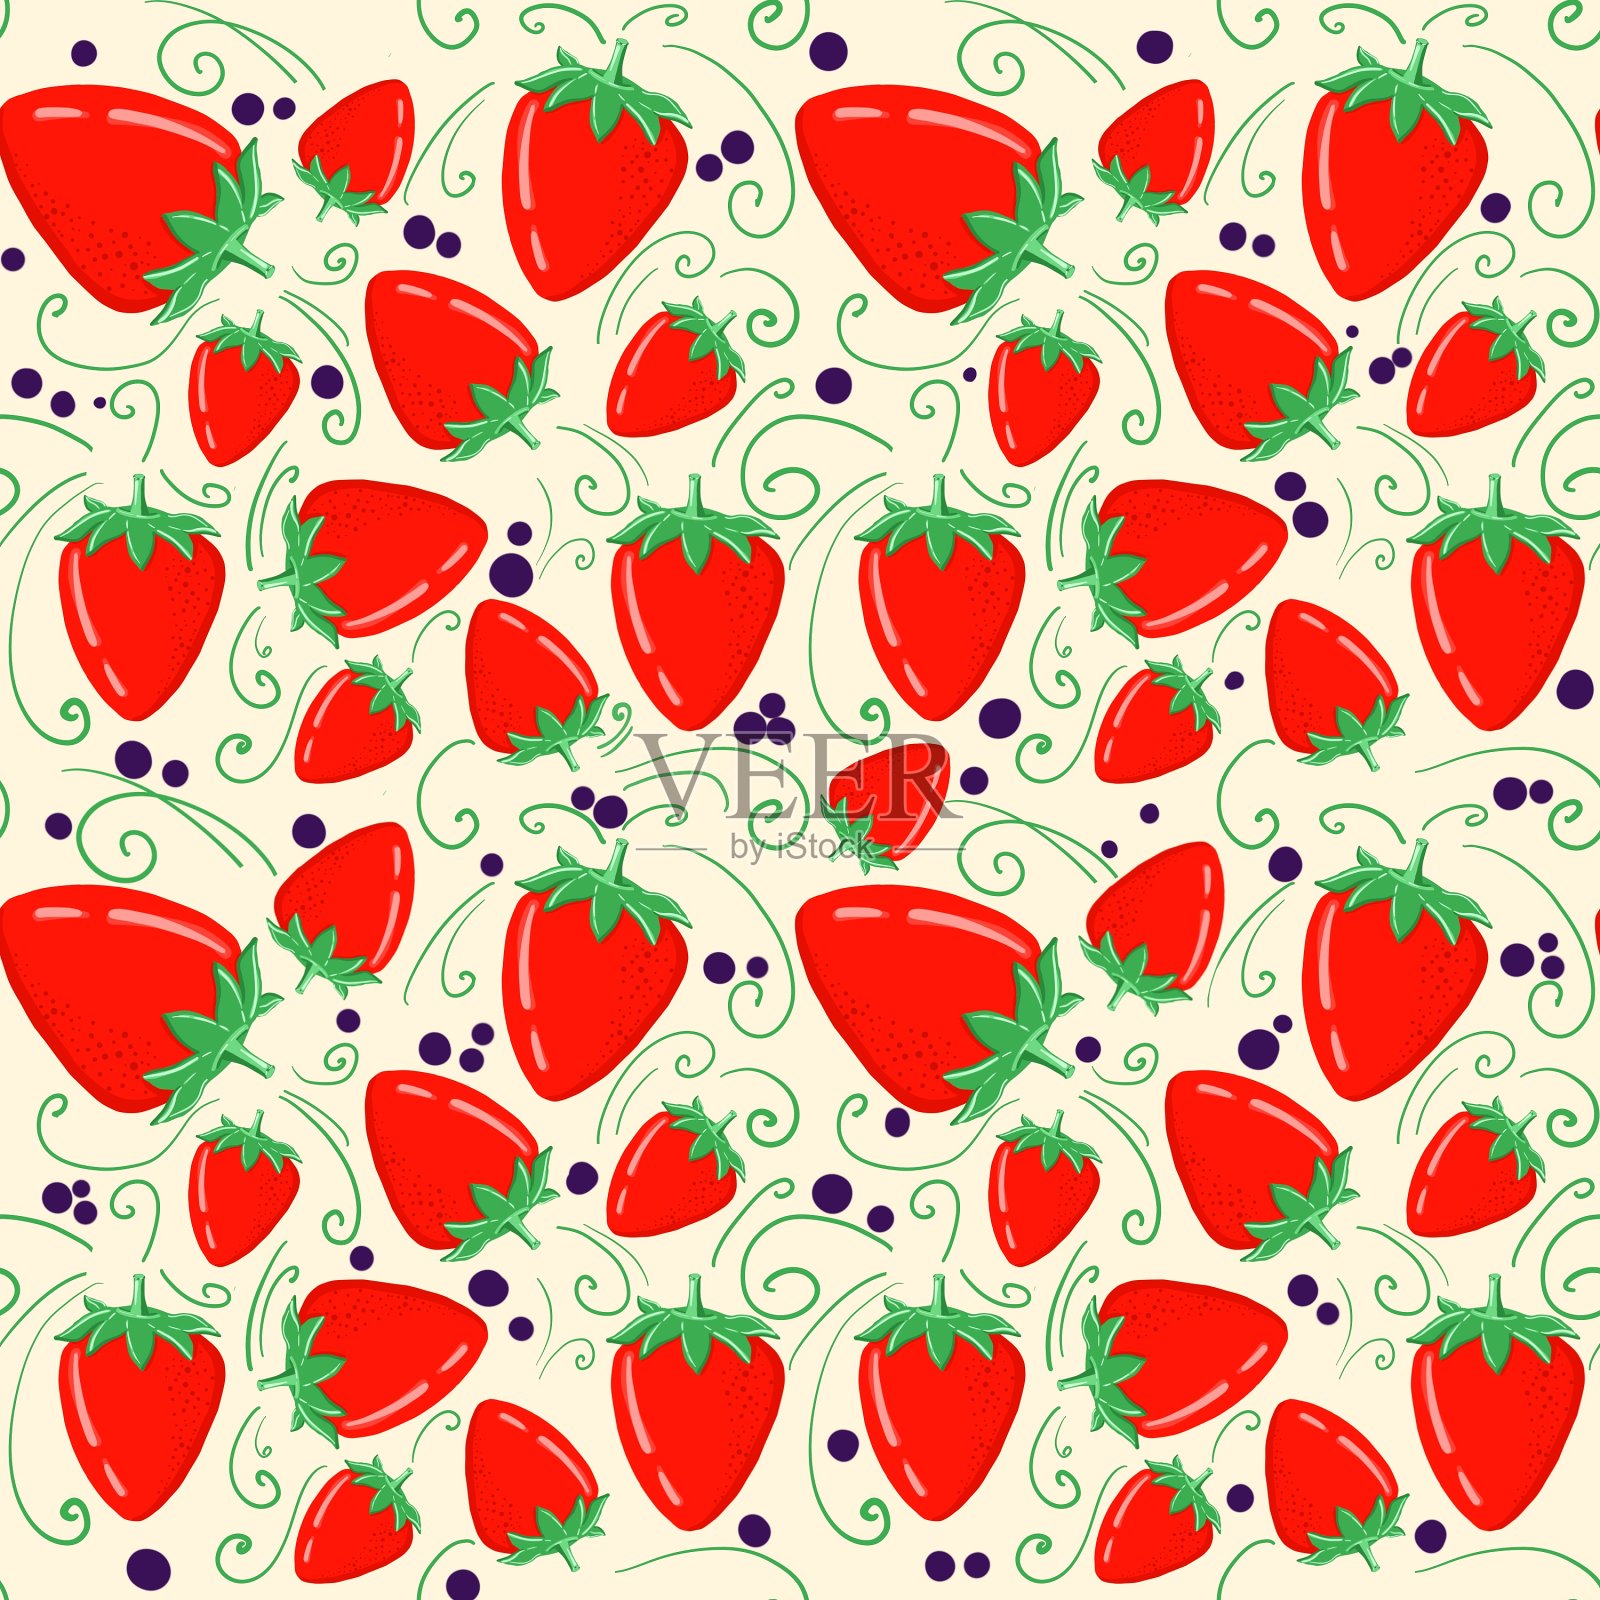 一个手绘的草莓图案。一个以食物为主题的无缝自然图案。为织物、纸张和其他物品做好设计。插画图片素材